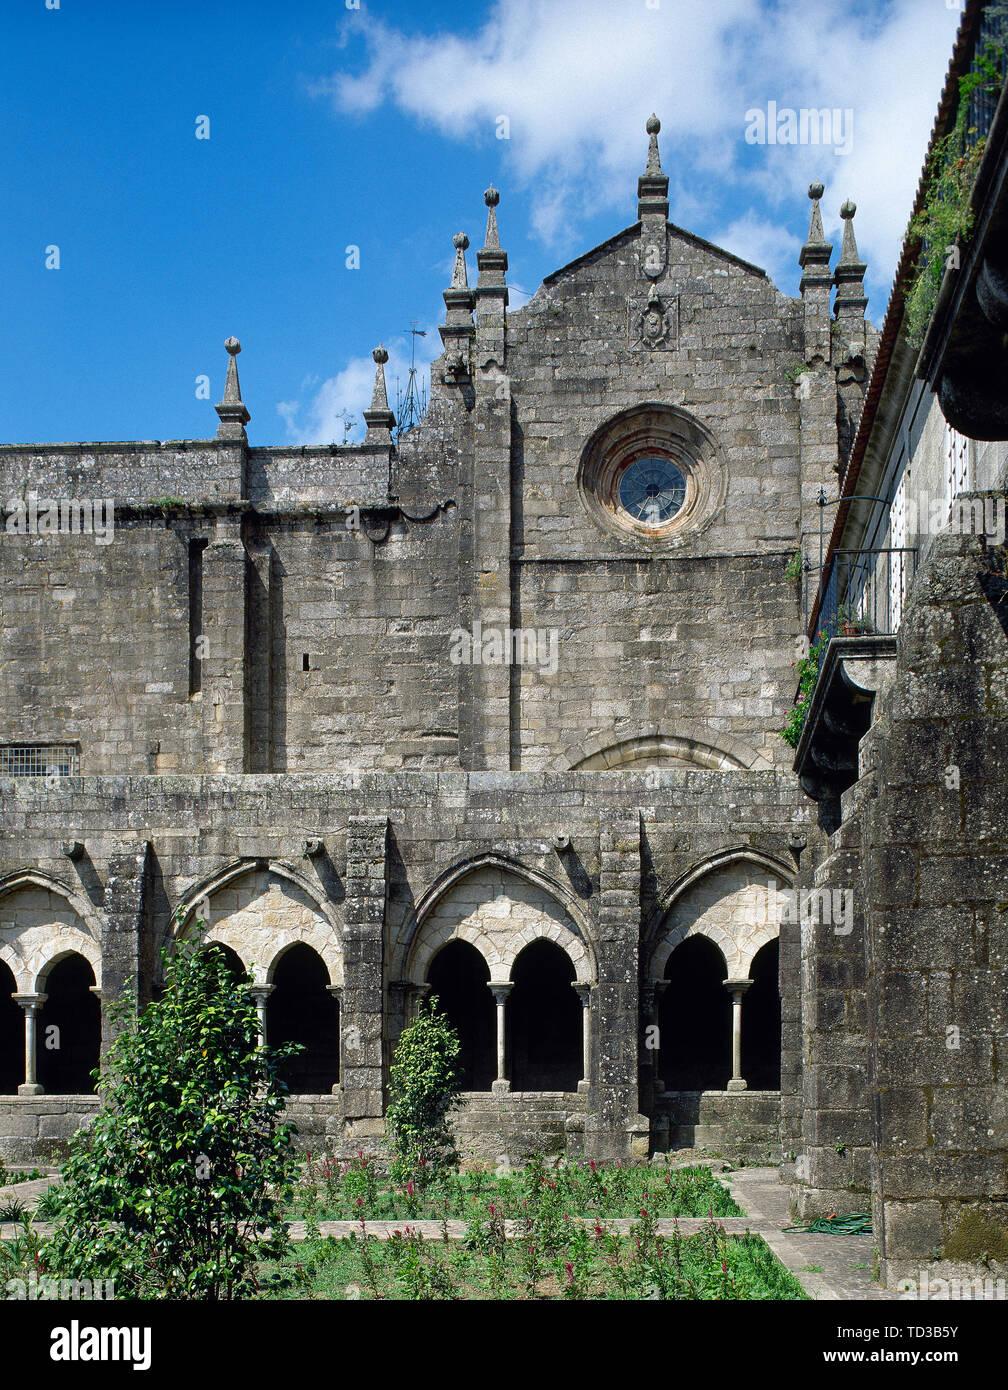 Spagna Galizia, nella provincia di Pontevedra, Tui. Cattedrale di Saint Mary. La sua costruzione iniziò nel XII secolo. Vista parziale del chiostro medievale, Cistercense di stile gotico del XIII secolo. Ristrutturato nel XV secolo. Foto Stock